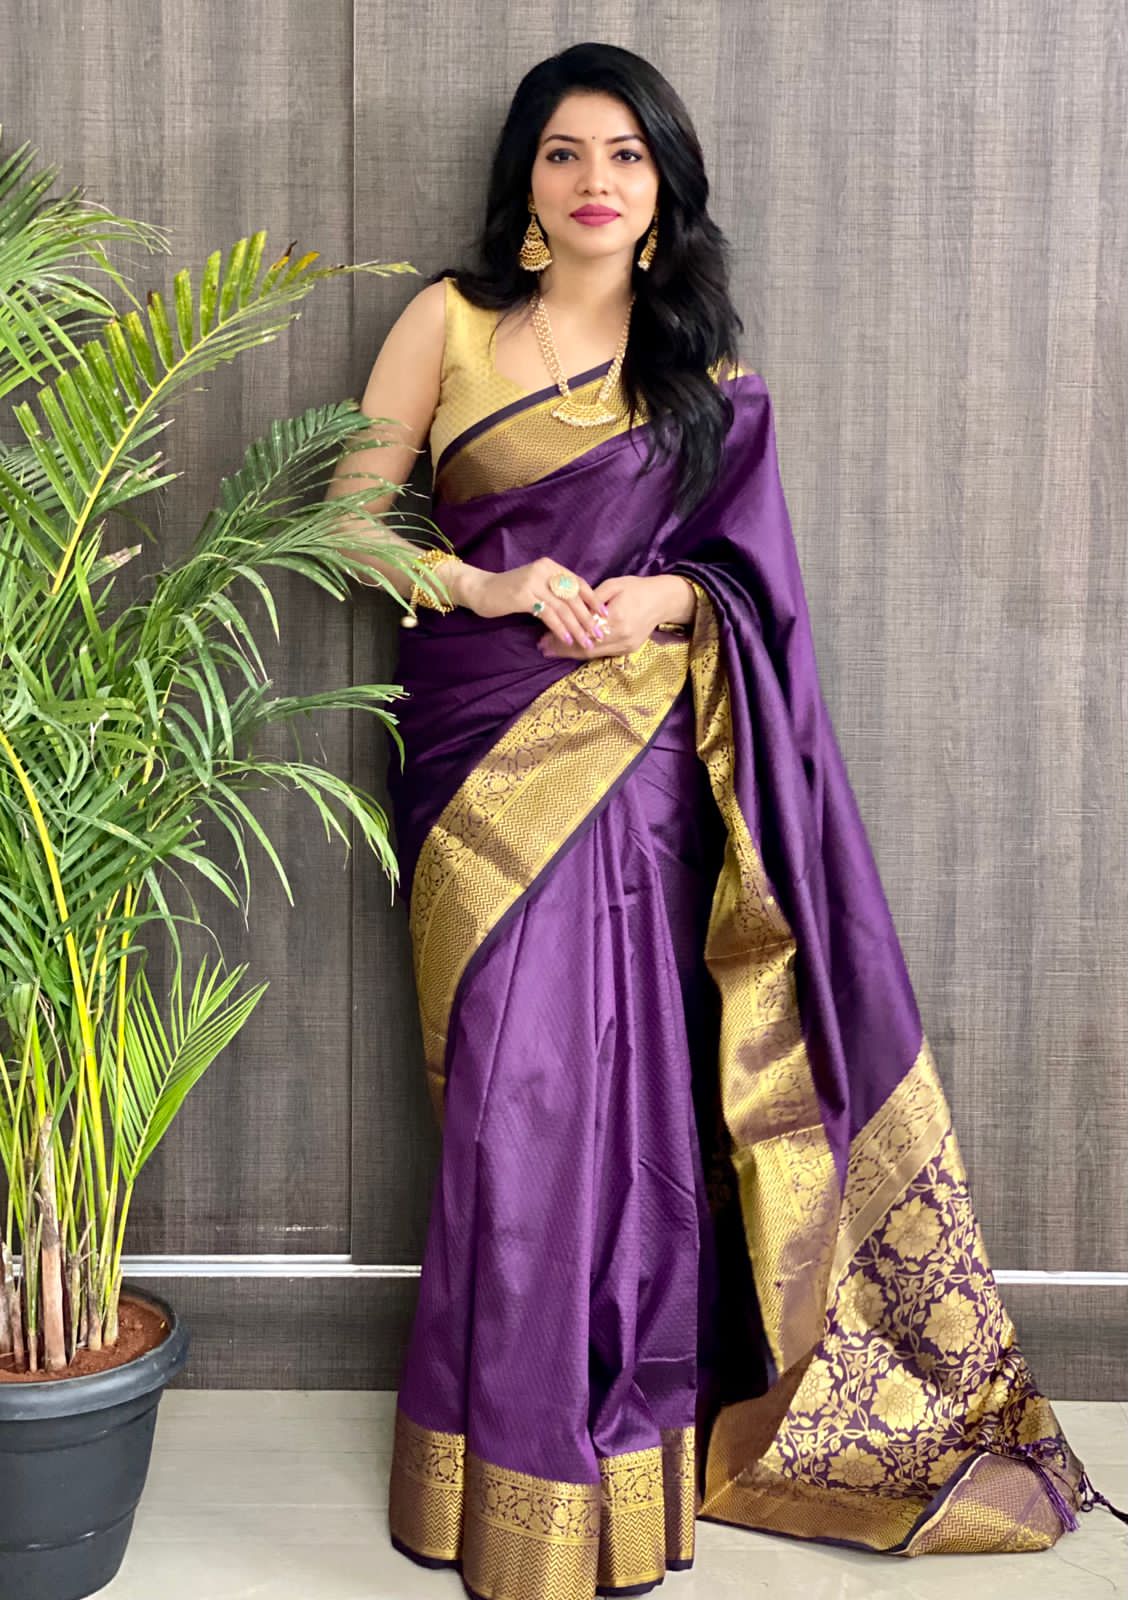 Stylish Modern Golden Zari Border Chiffon Purple Saree For Girls/Women